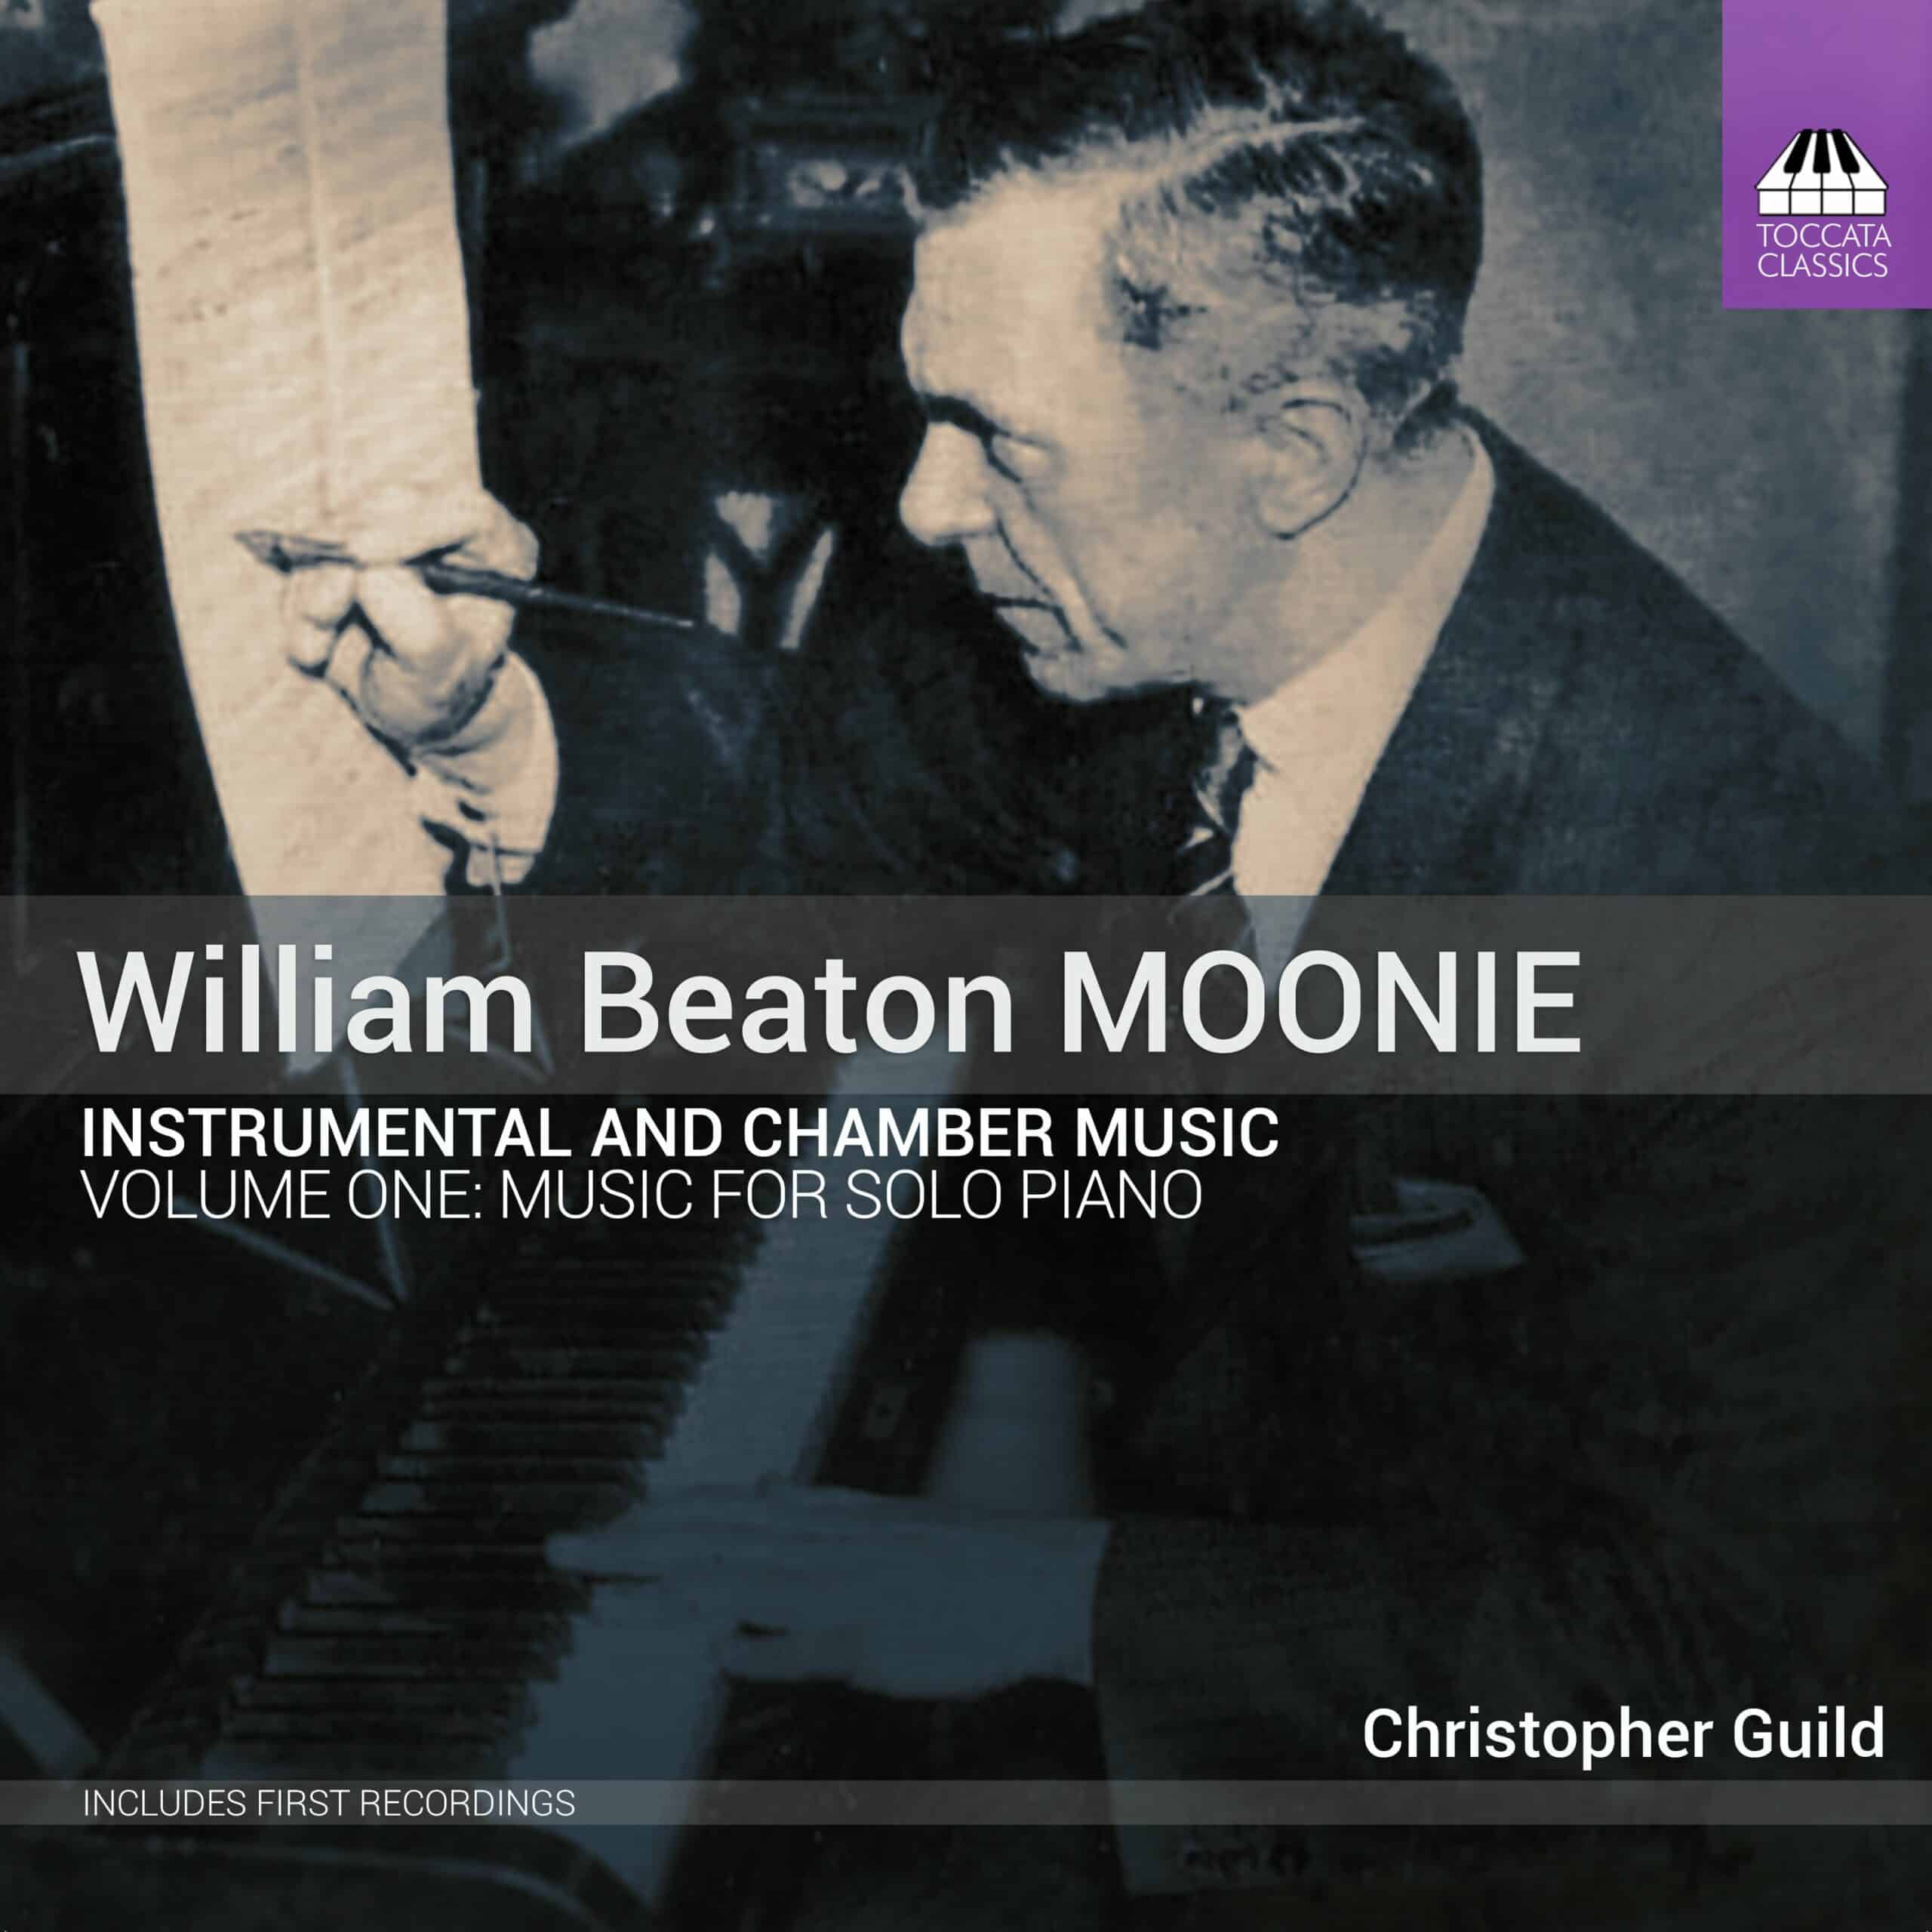 William Beaton Moonie: Instrumental and Chamber Music